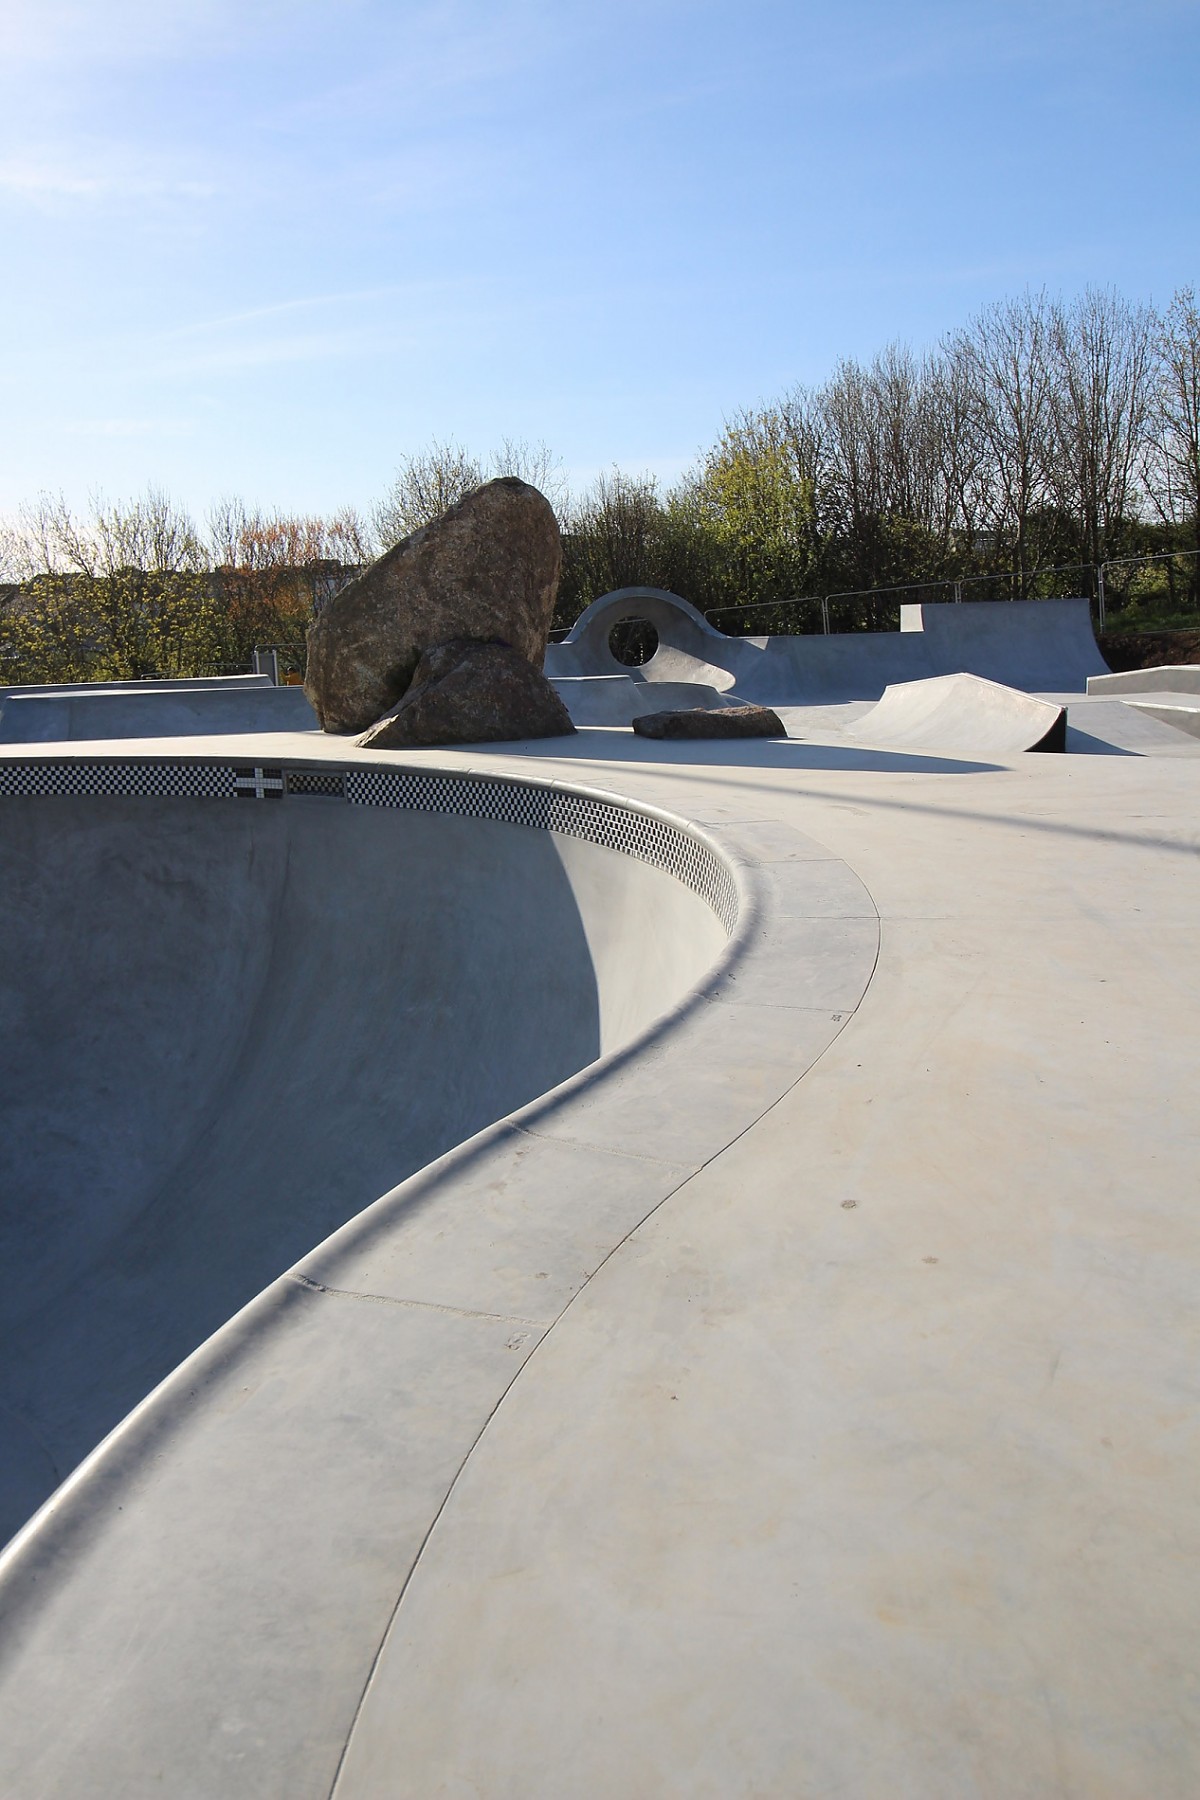 Saint Ives skatepark